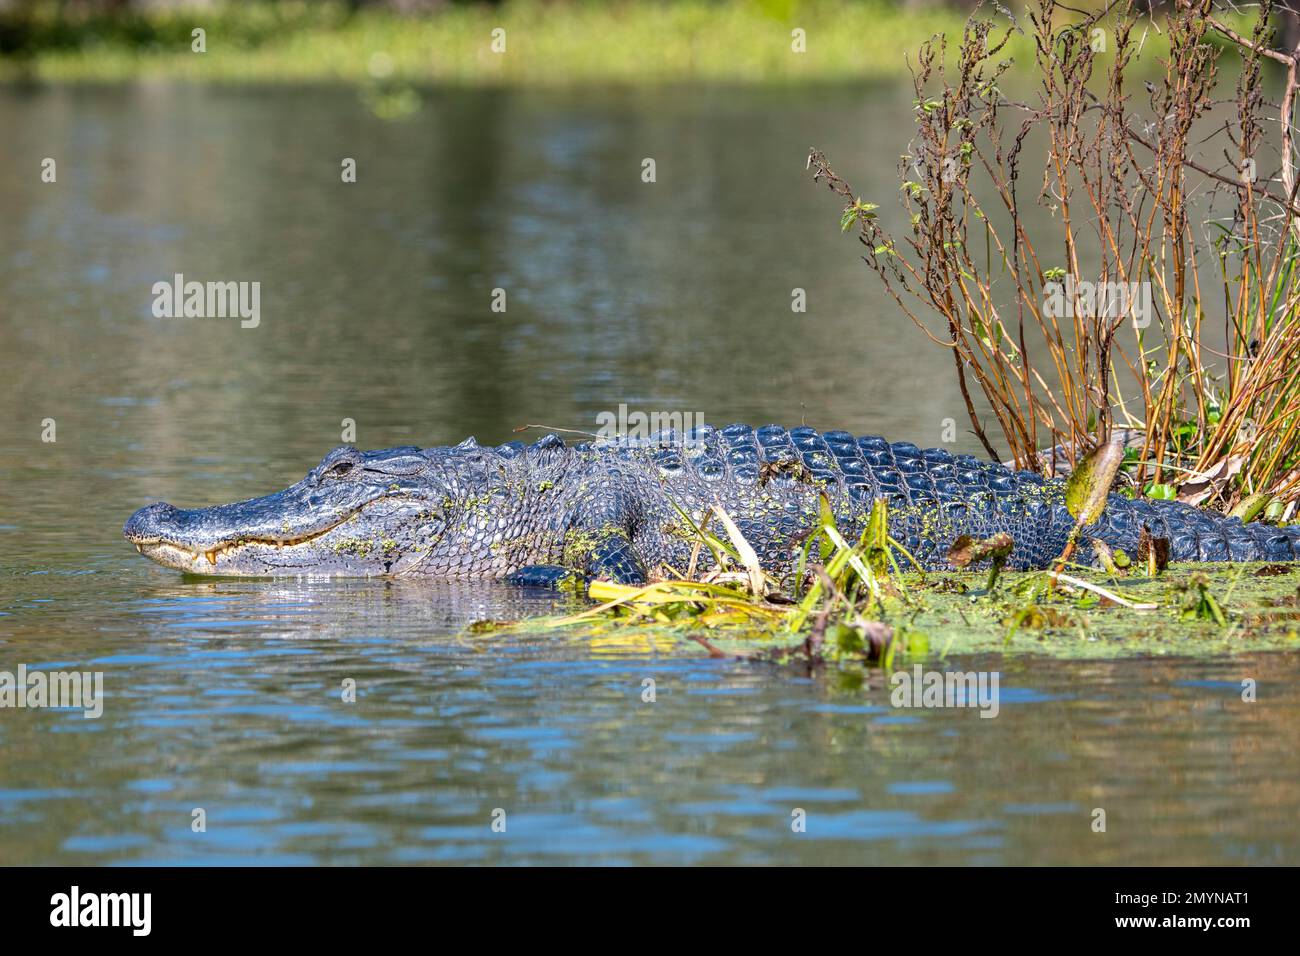 Alligator américain (Alligator mississippiensis), bassin d'Atchafalaya, Louisiane, États-Unis, Amérique du Nord Banque D'Images